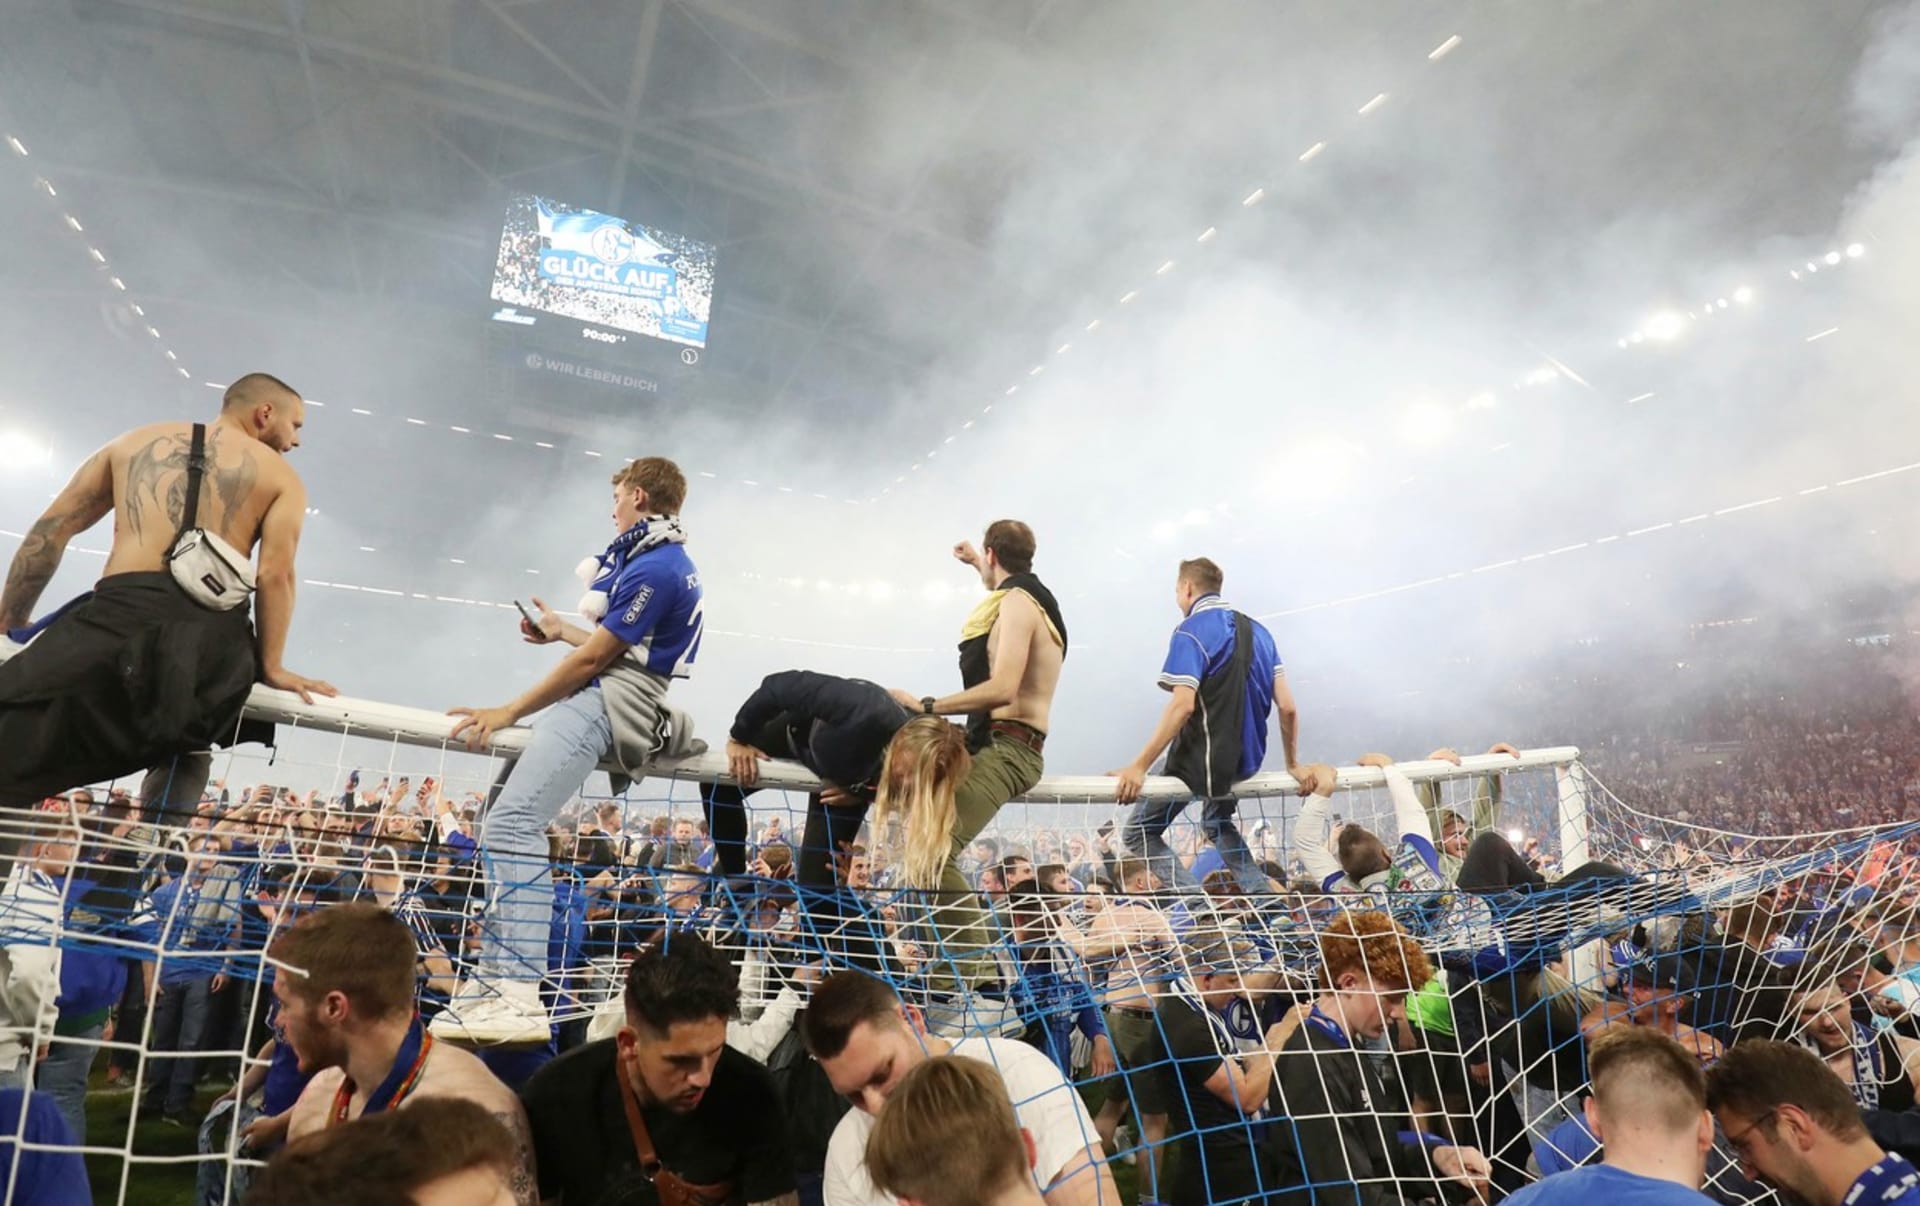 Fanoušci německého fotbalového klubu Schalke 04 sedí po vítězném utkání 3:2 nad FC St. Pauli ve druhé bundeslize na brance ve Veltins Areně v Gelsenkirchenu. Oslavovali tak postup do nejvyšší soutěže. Na tribunách však někteří lidé bojovali o život. 